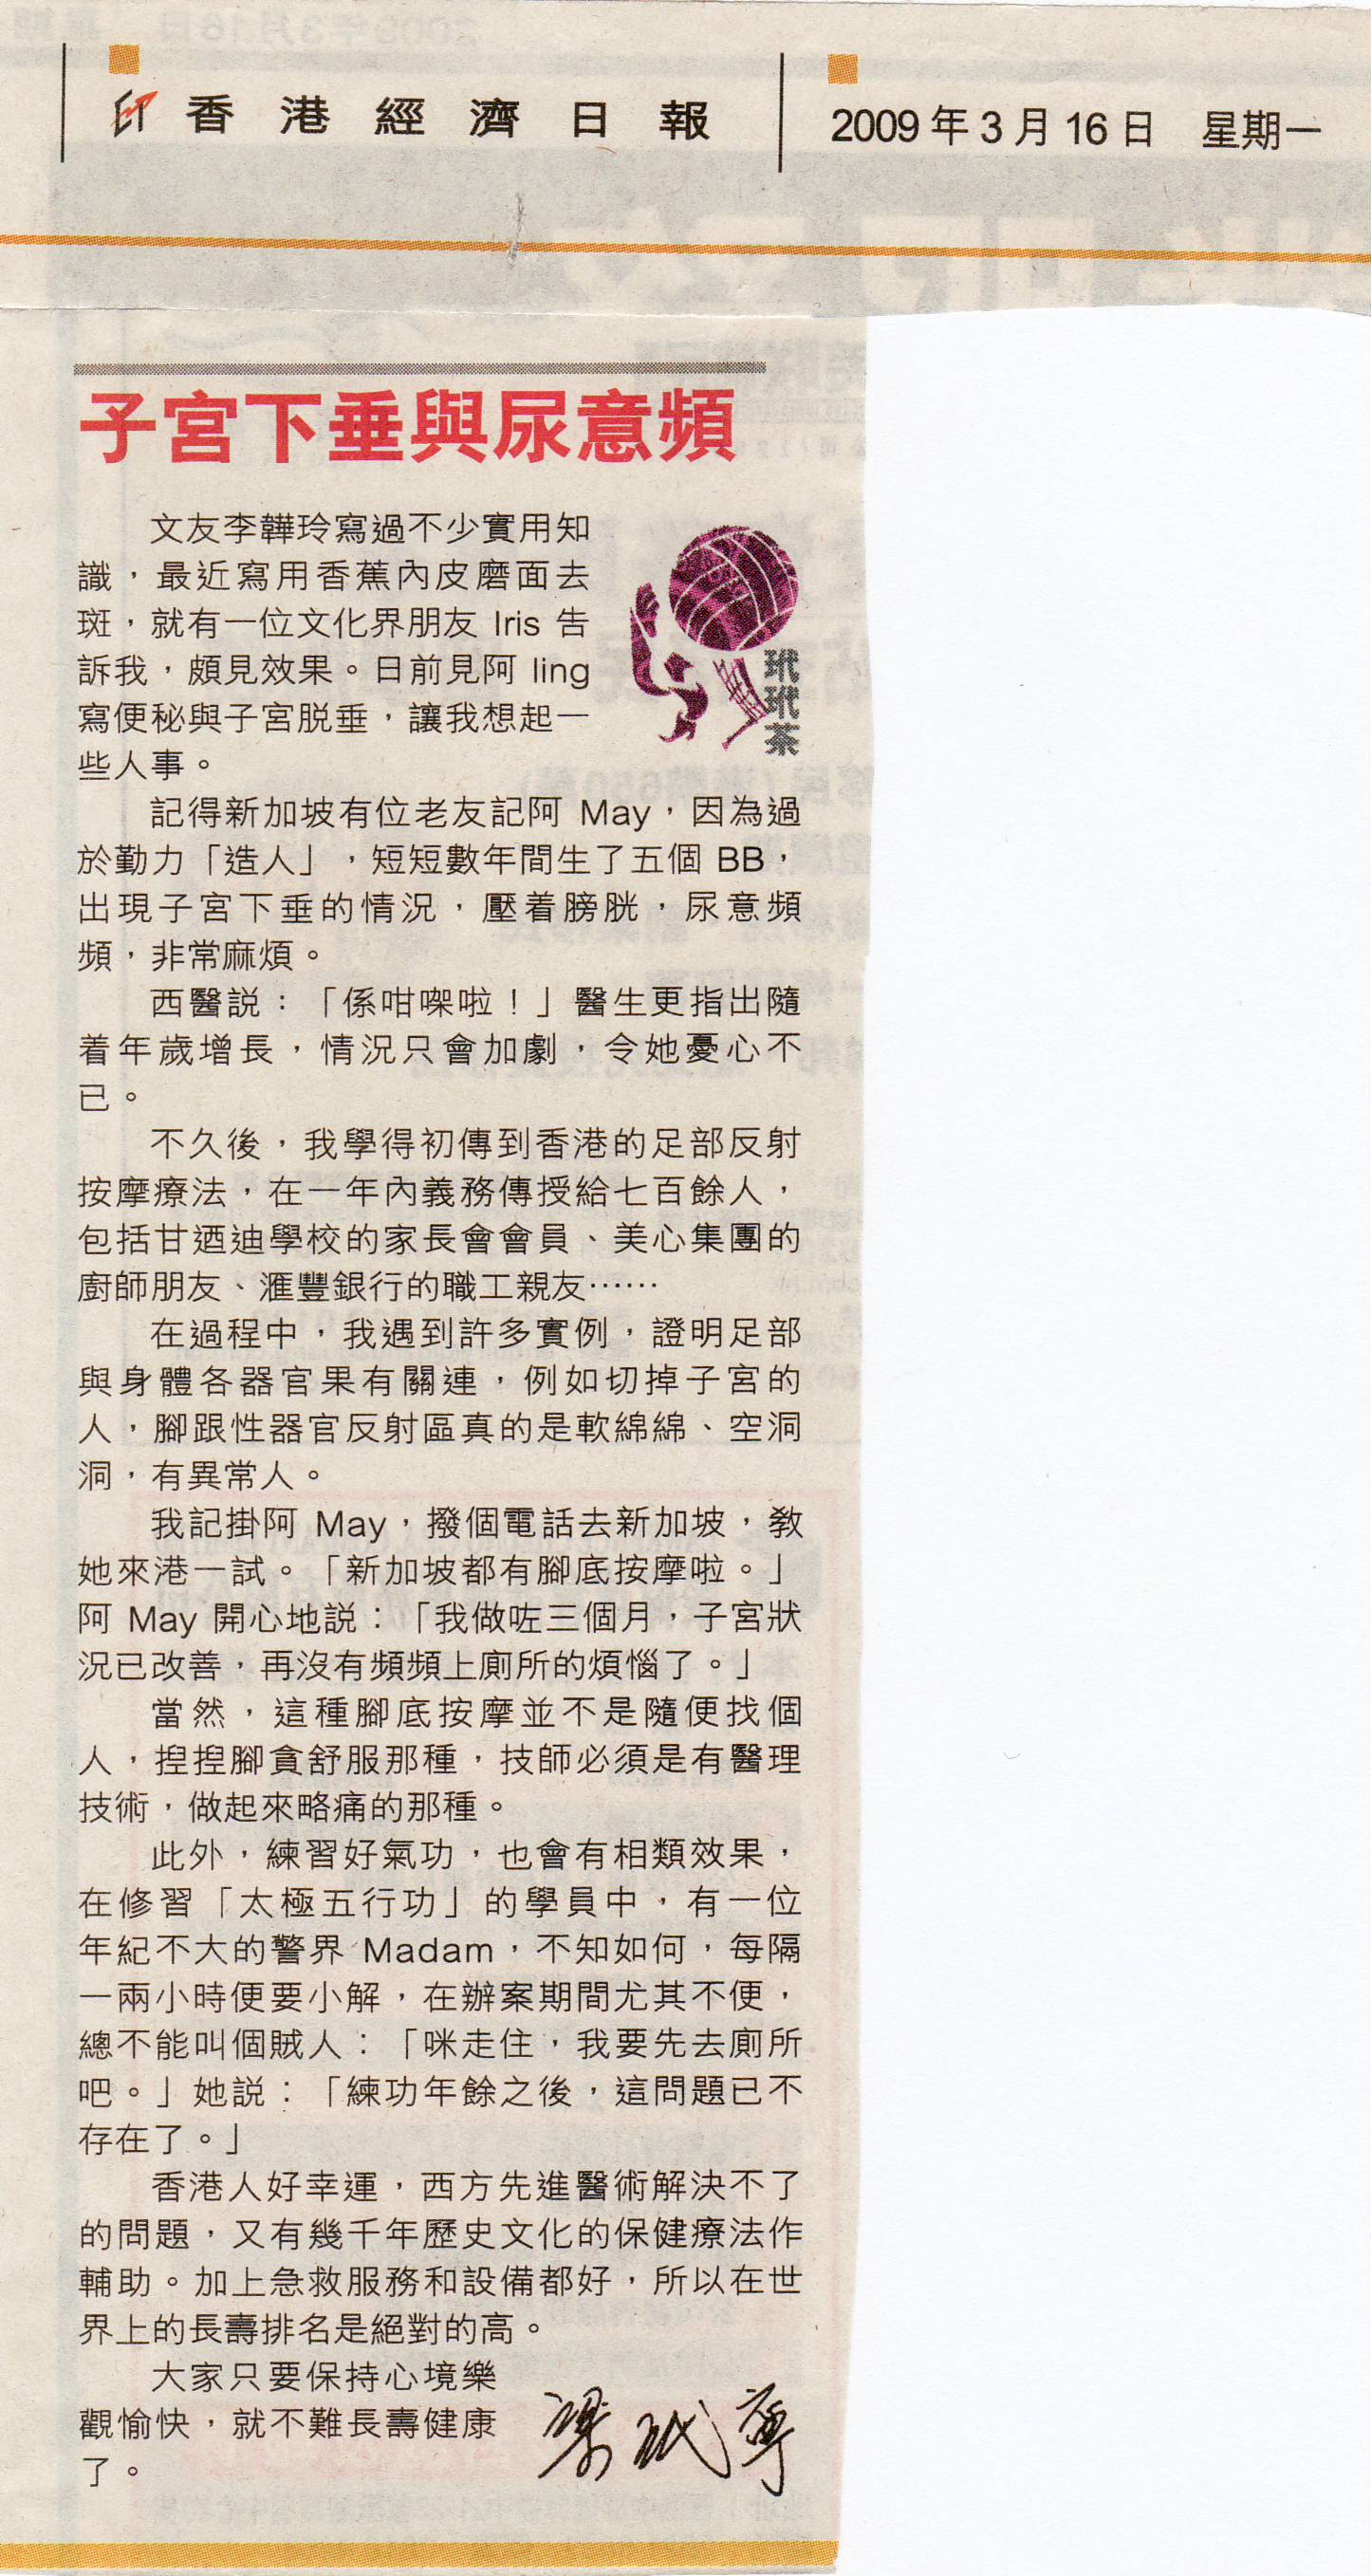 香港經濟日報︰2009年3月16日 (子宮下垂與尿意頻)